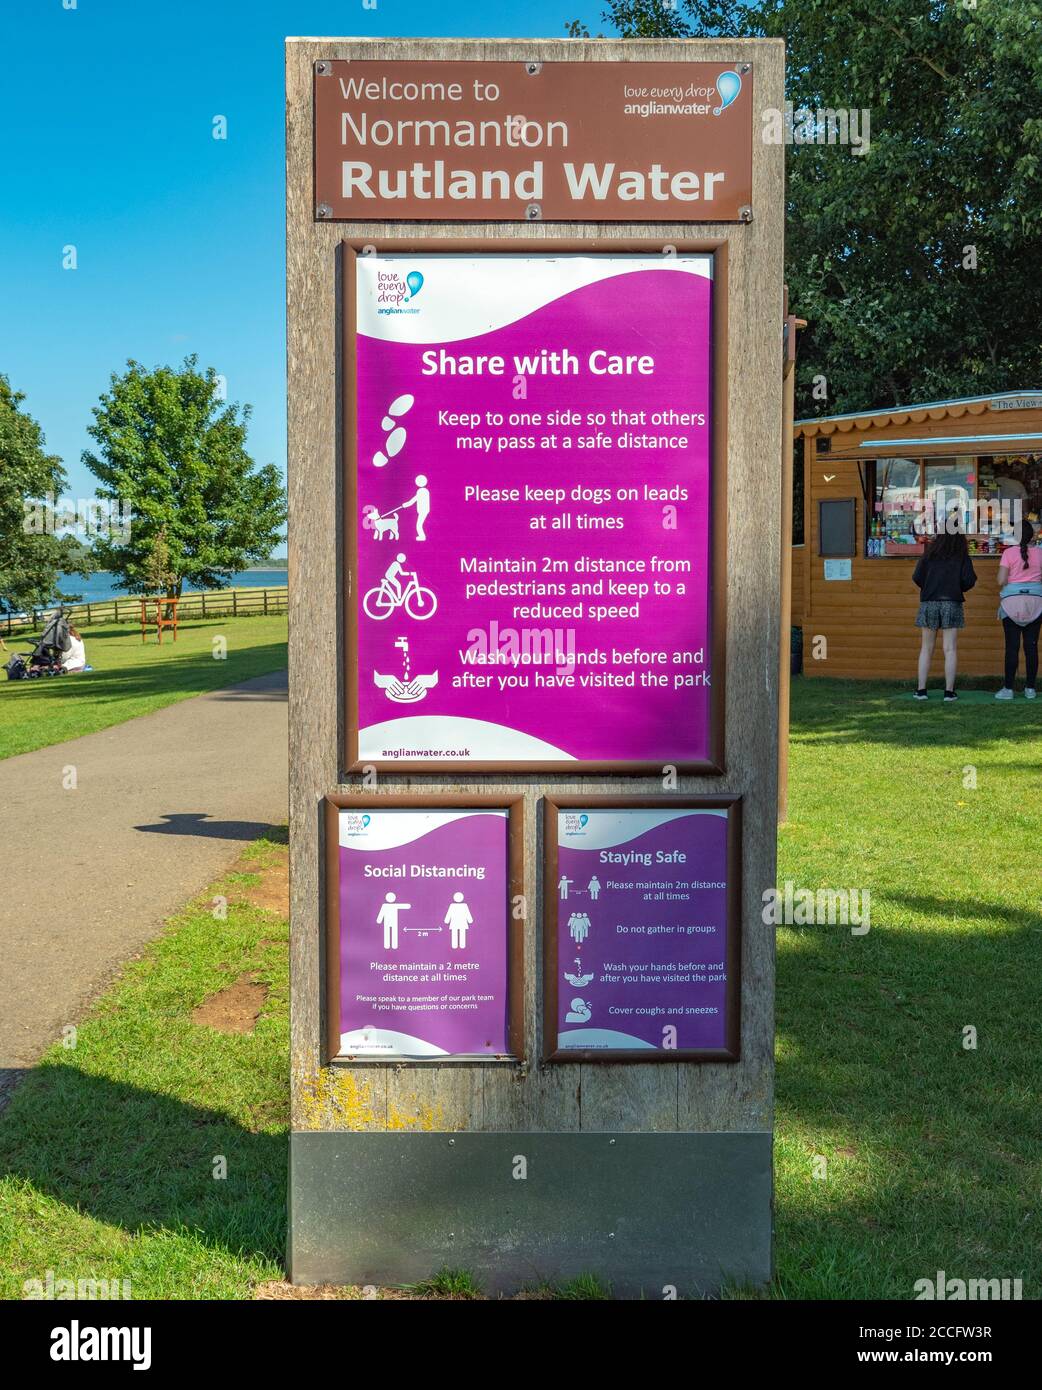 Consiglio di avviso di allontanamento sociale (durante il coronavirus / covid-19 pandemia) in estate sole. Rutland Water, Normanton, Inghilterra, Regno Unito. Foto Stock